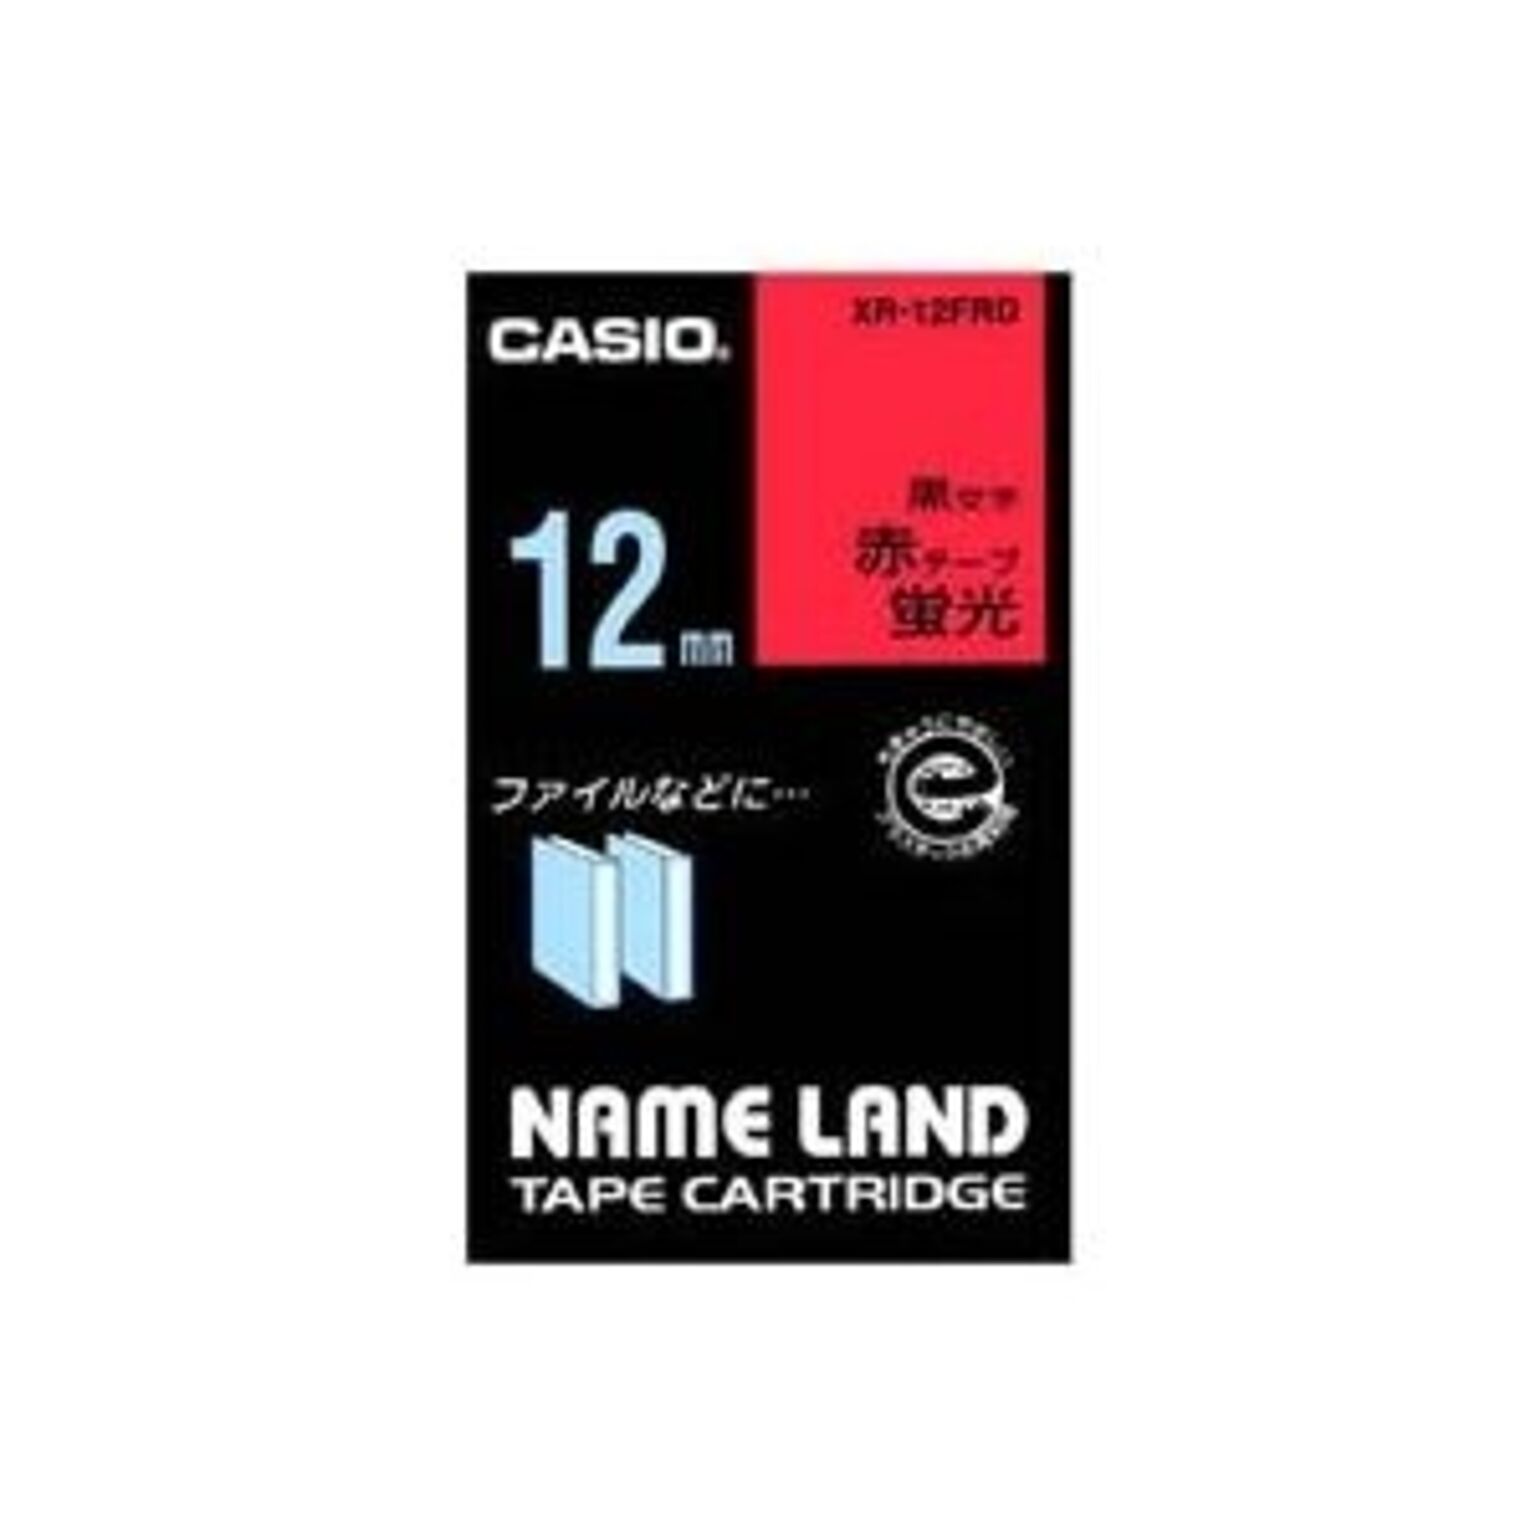 （まとめ）カシオ CASIO 蛍光テープ XR-12FRD 赤に黒文字 12mm×5セット